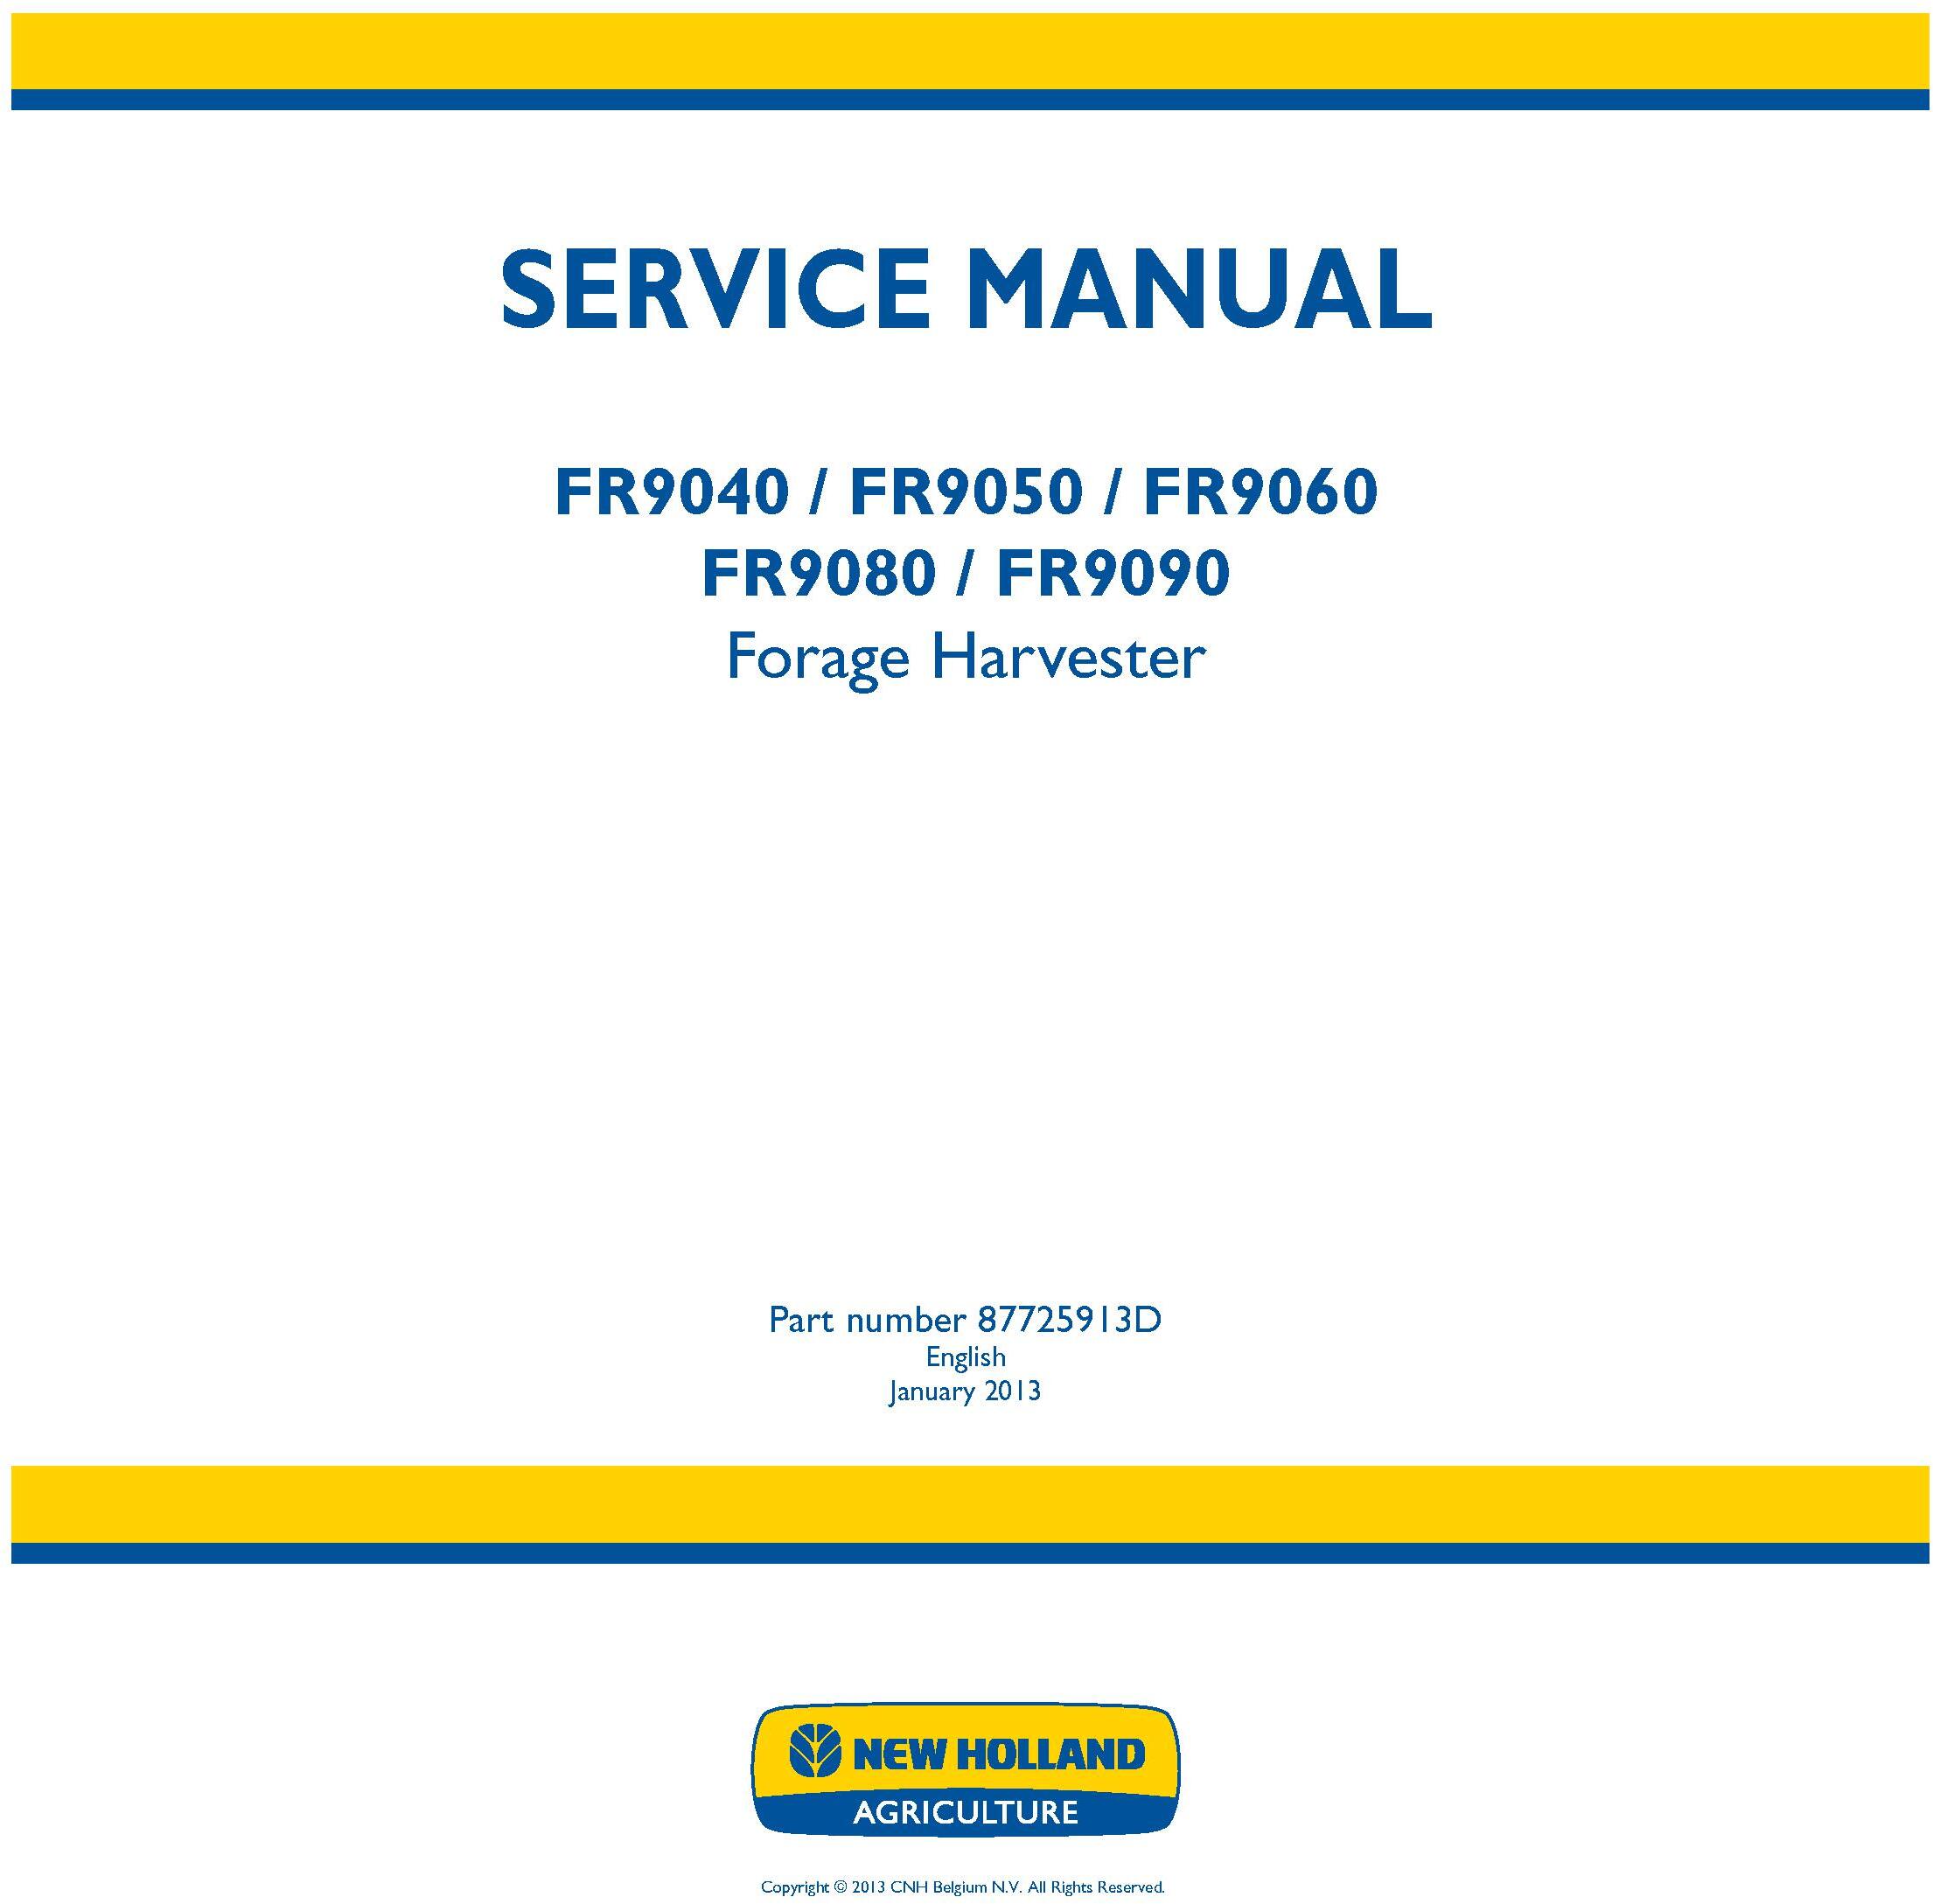 New Holland FR9040, FR9050, FR9060, FR9080, FR9090 Forage Harvester Service Manual - 20032